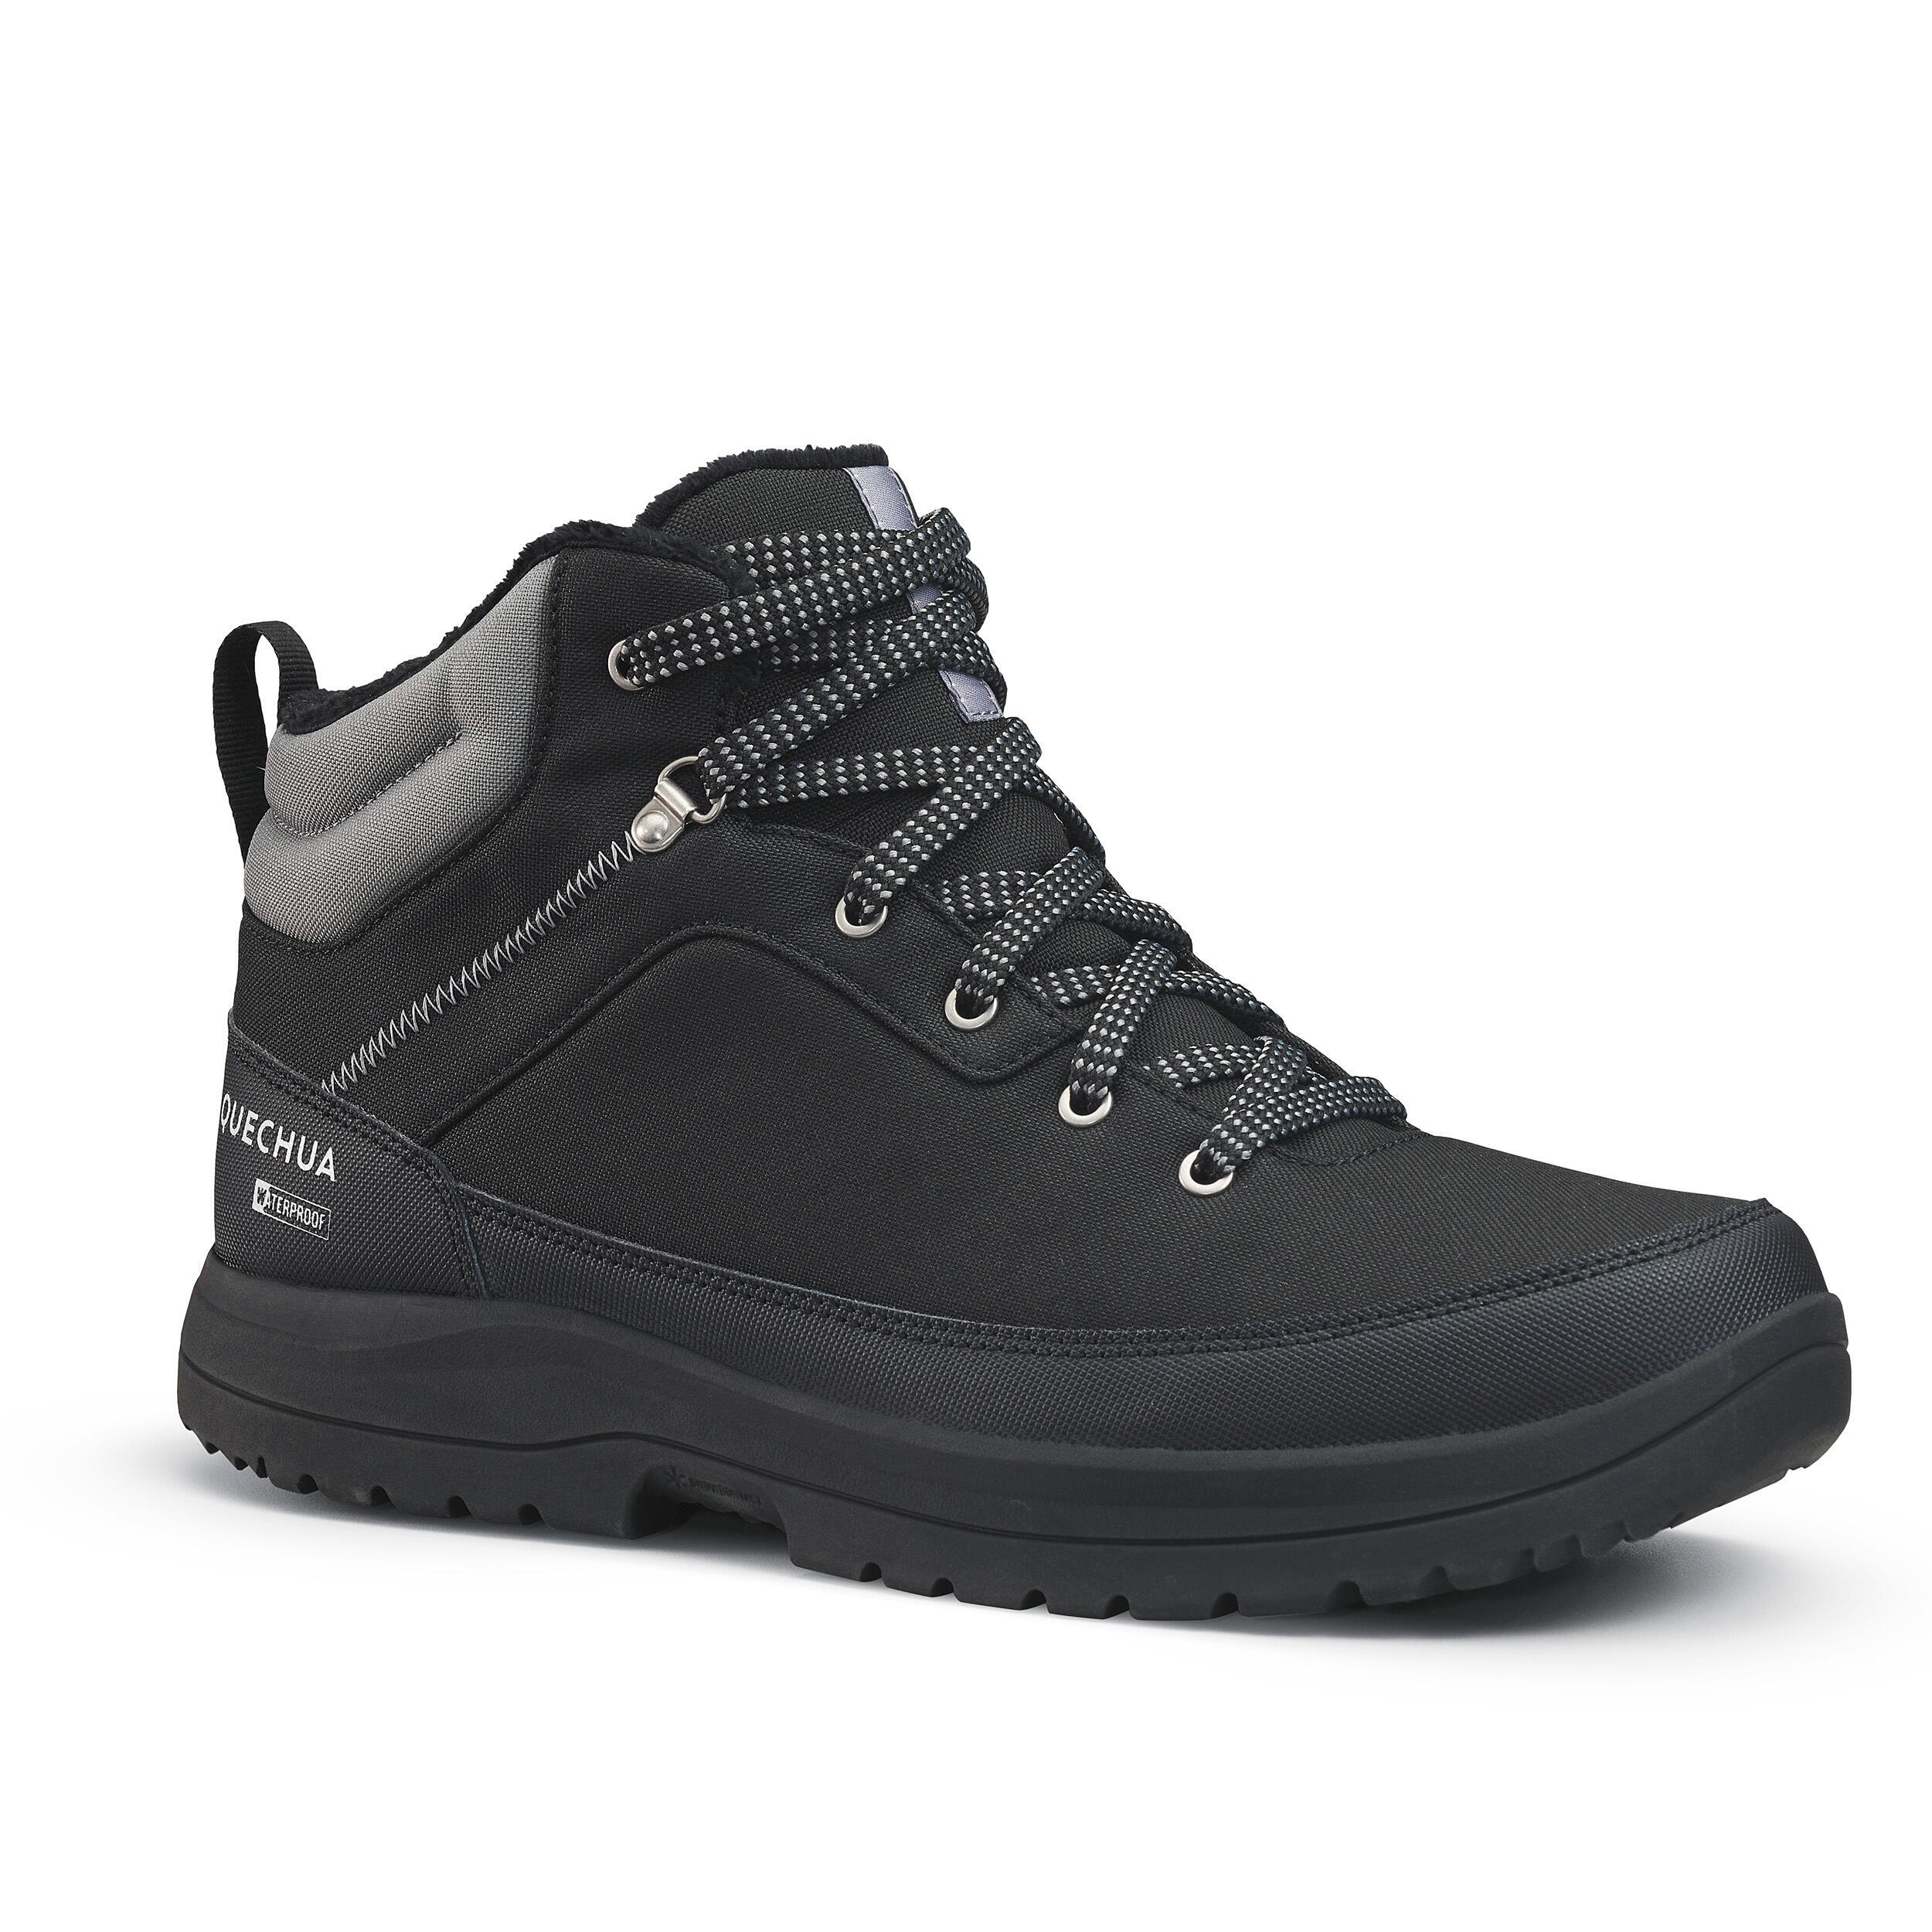 Мужские непромокаемые ботинки средней высоты для зимних походов Quechua SH100, черный/темно-серый